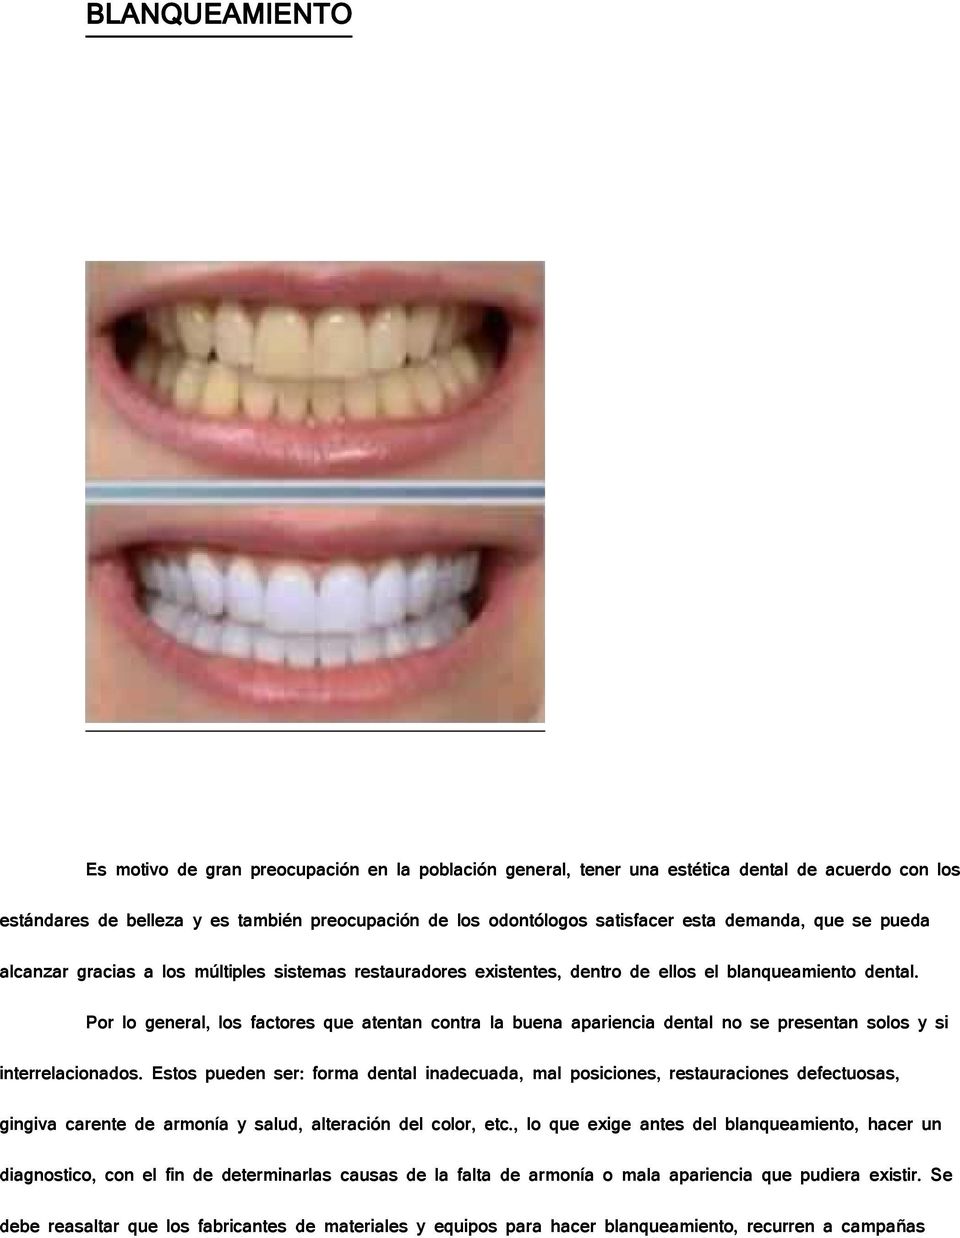 Por lo general, los factores que atentan contra la buena apariencia dental no se presentan solos y si interrelacionados.